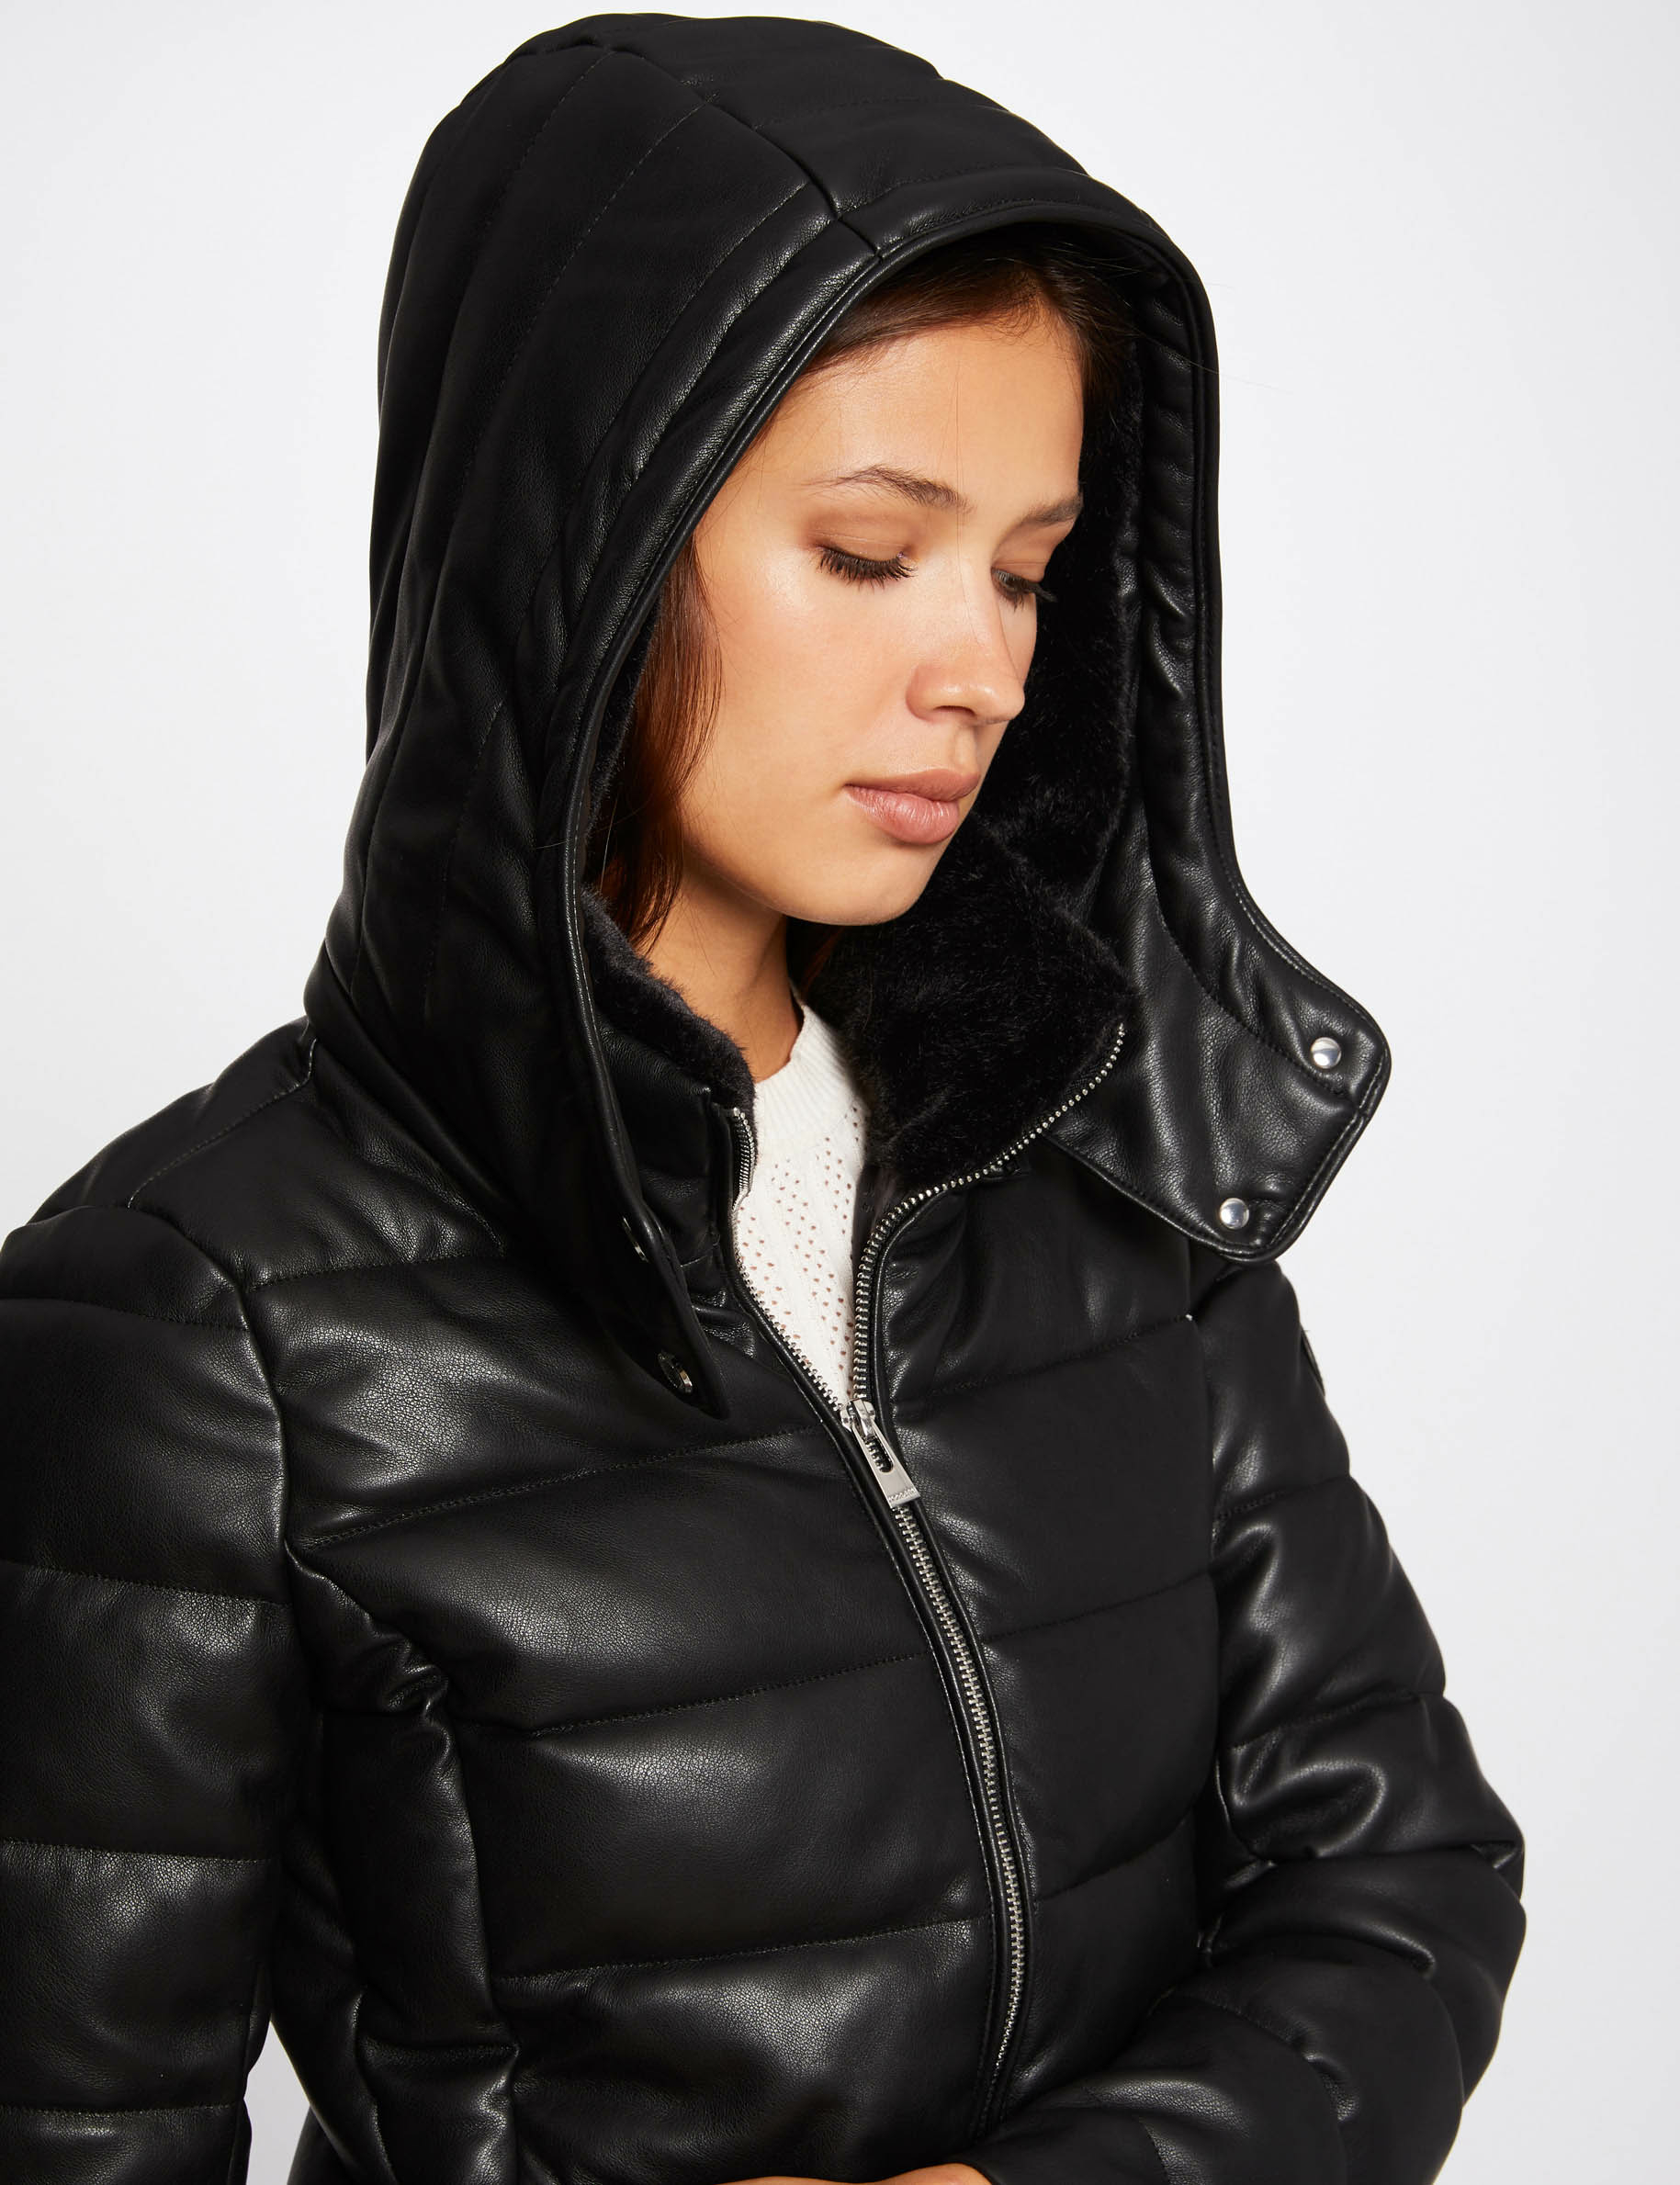 Straight padded jacket with hood black ladies'